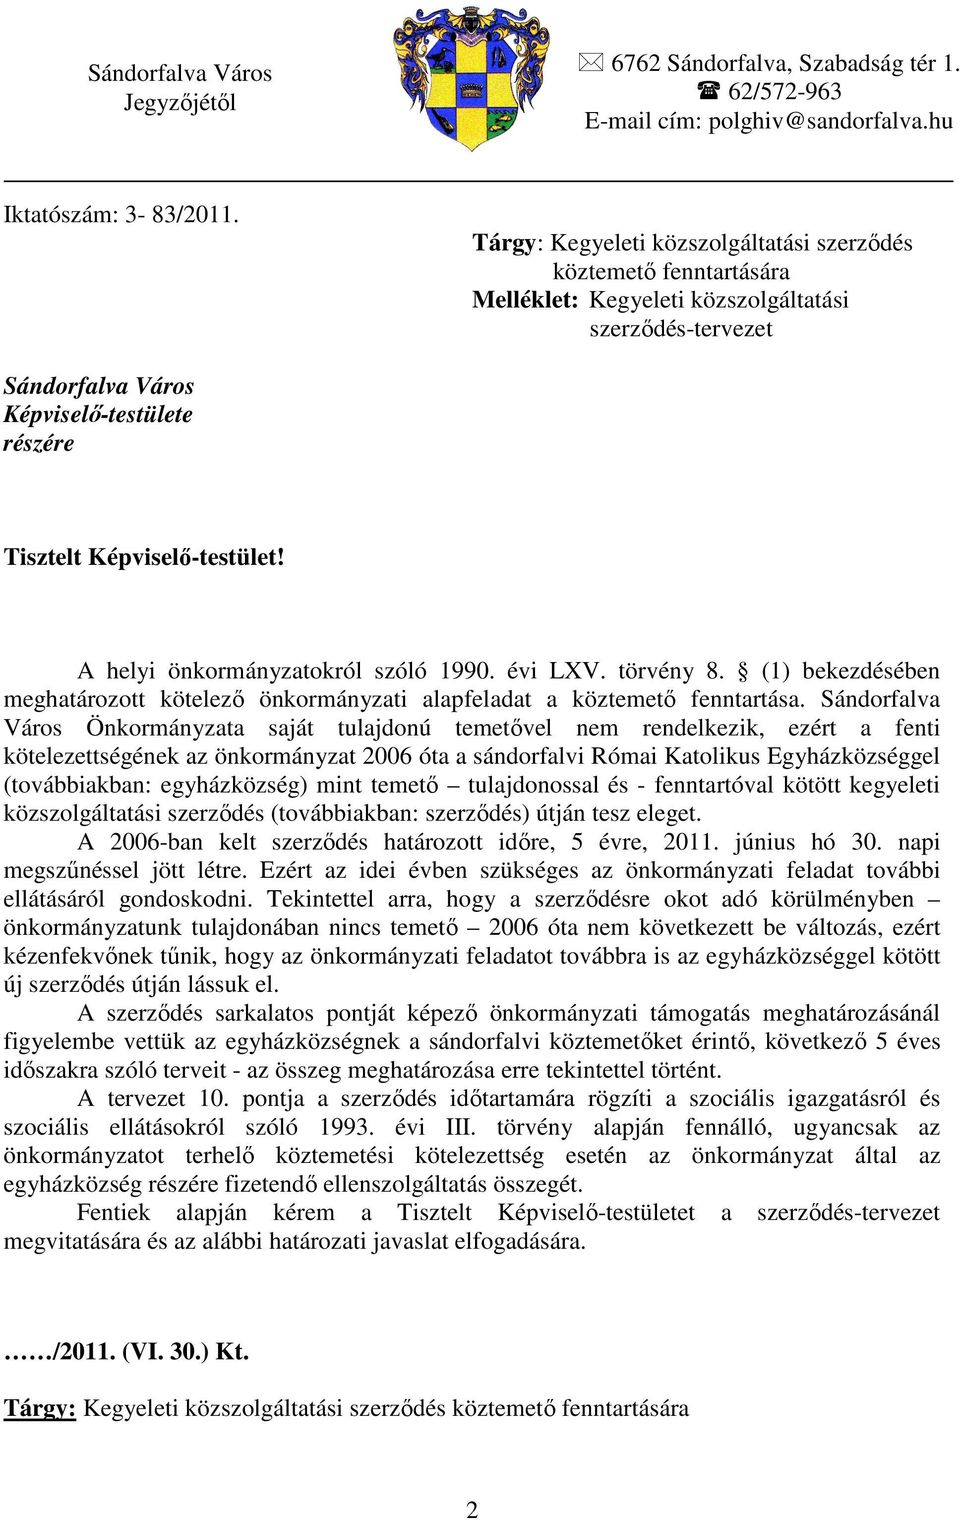 A helyi önkormányzatokról szóló 1990. évi LXV. törvény 8. (1) bekezdésében meghatározott kötelezı önkormányzati alapfeladat a köztemetı fenntartása.